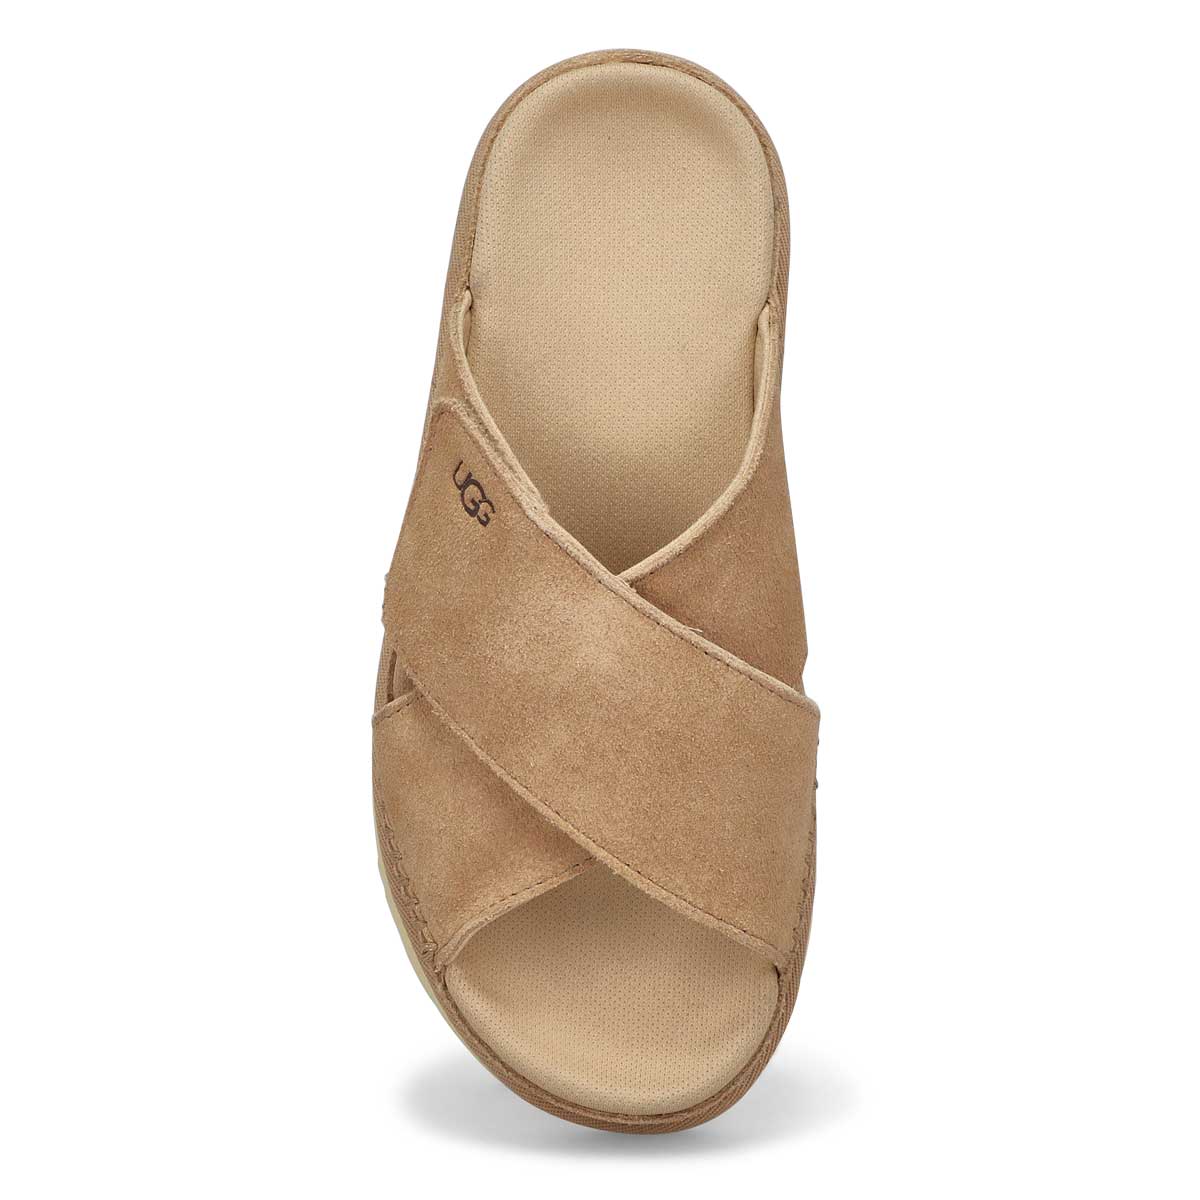 Sandale à plateforme GOLDENSTAR CROSS PLATFORM, bois flotté, femmes